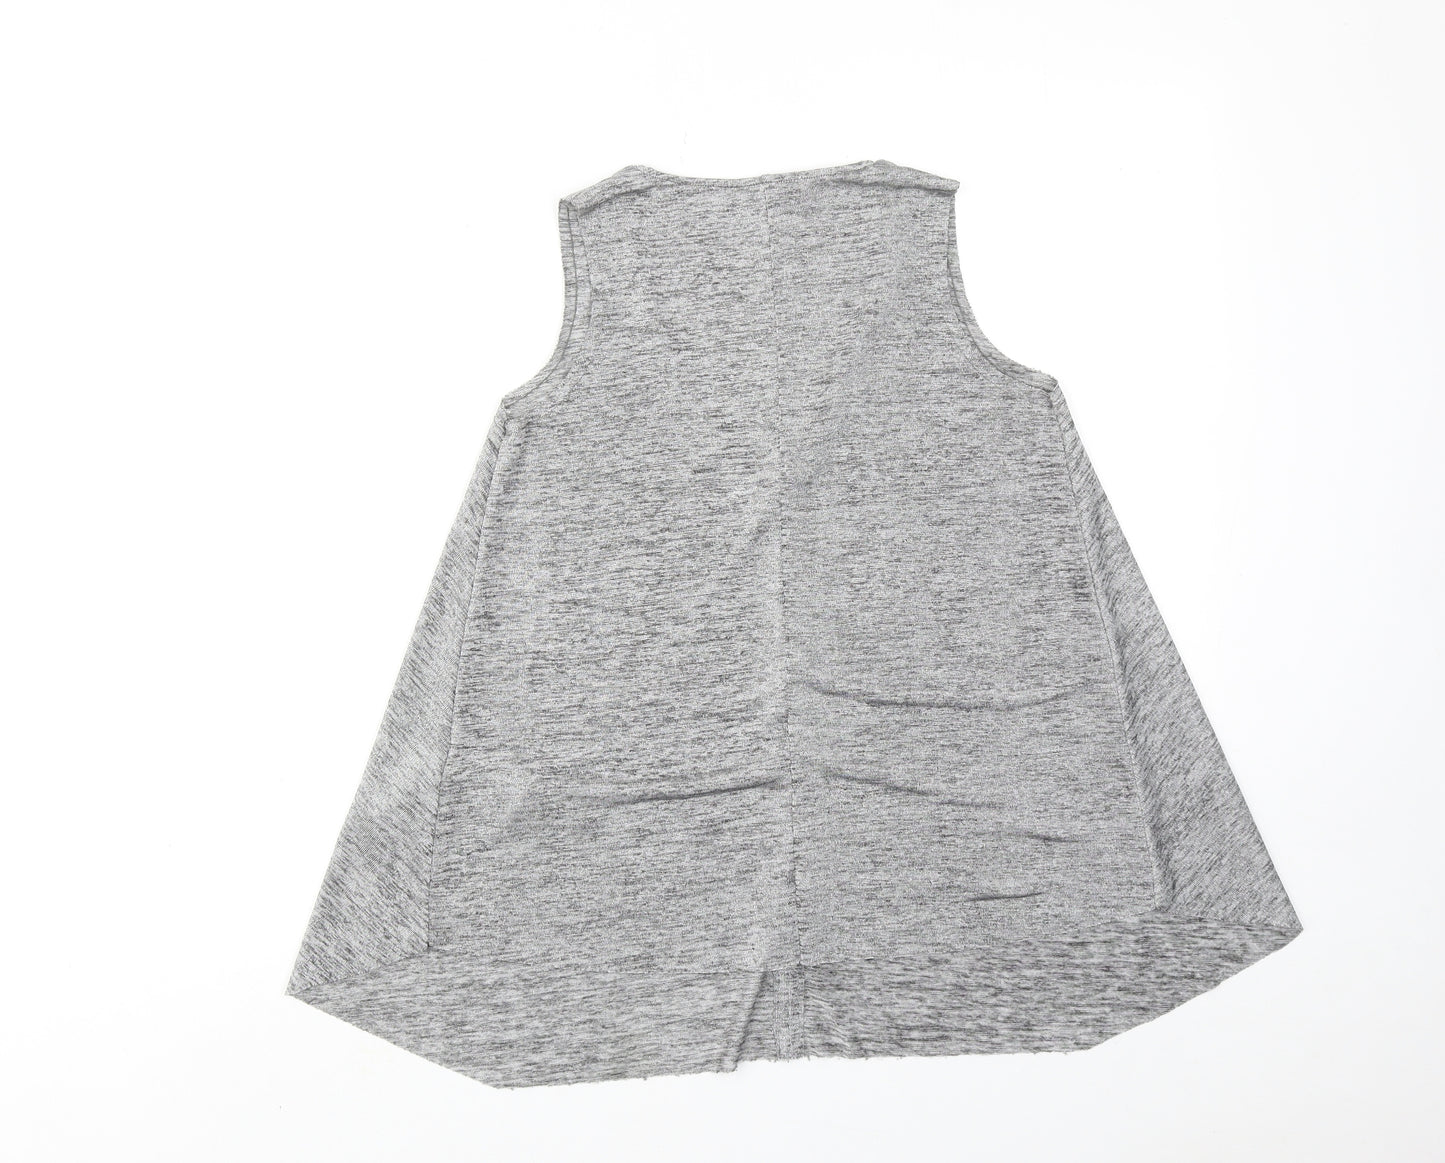 Zara Womens Grey Geometric Polyester Basic Tank Size S V-Neck